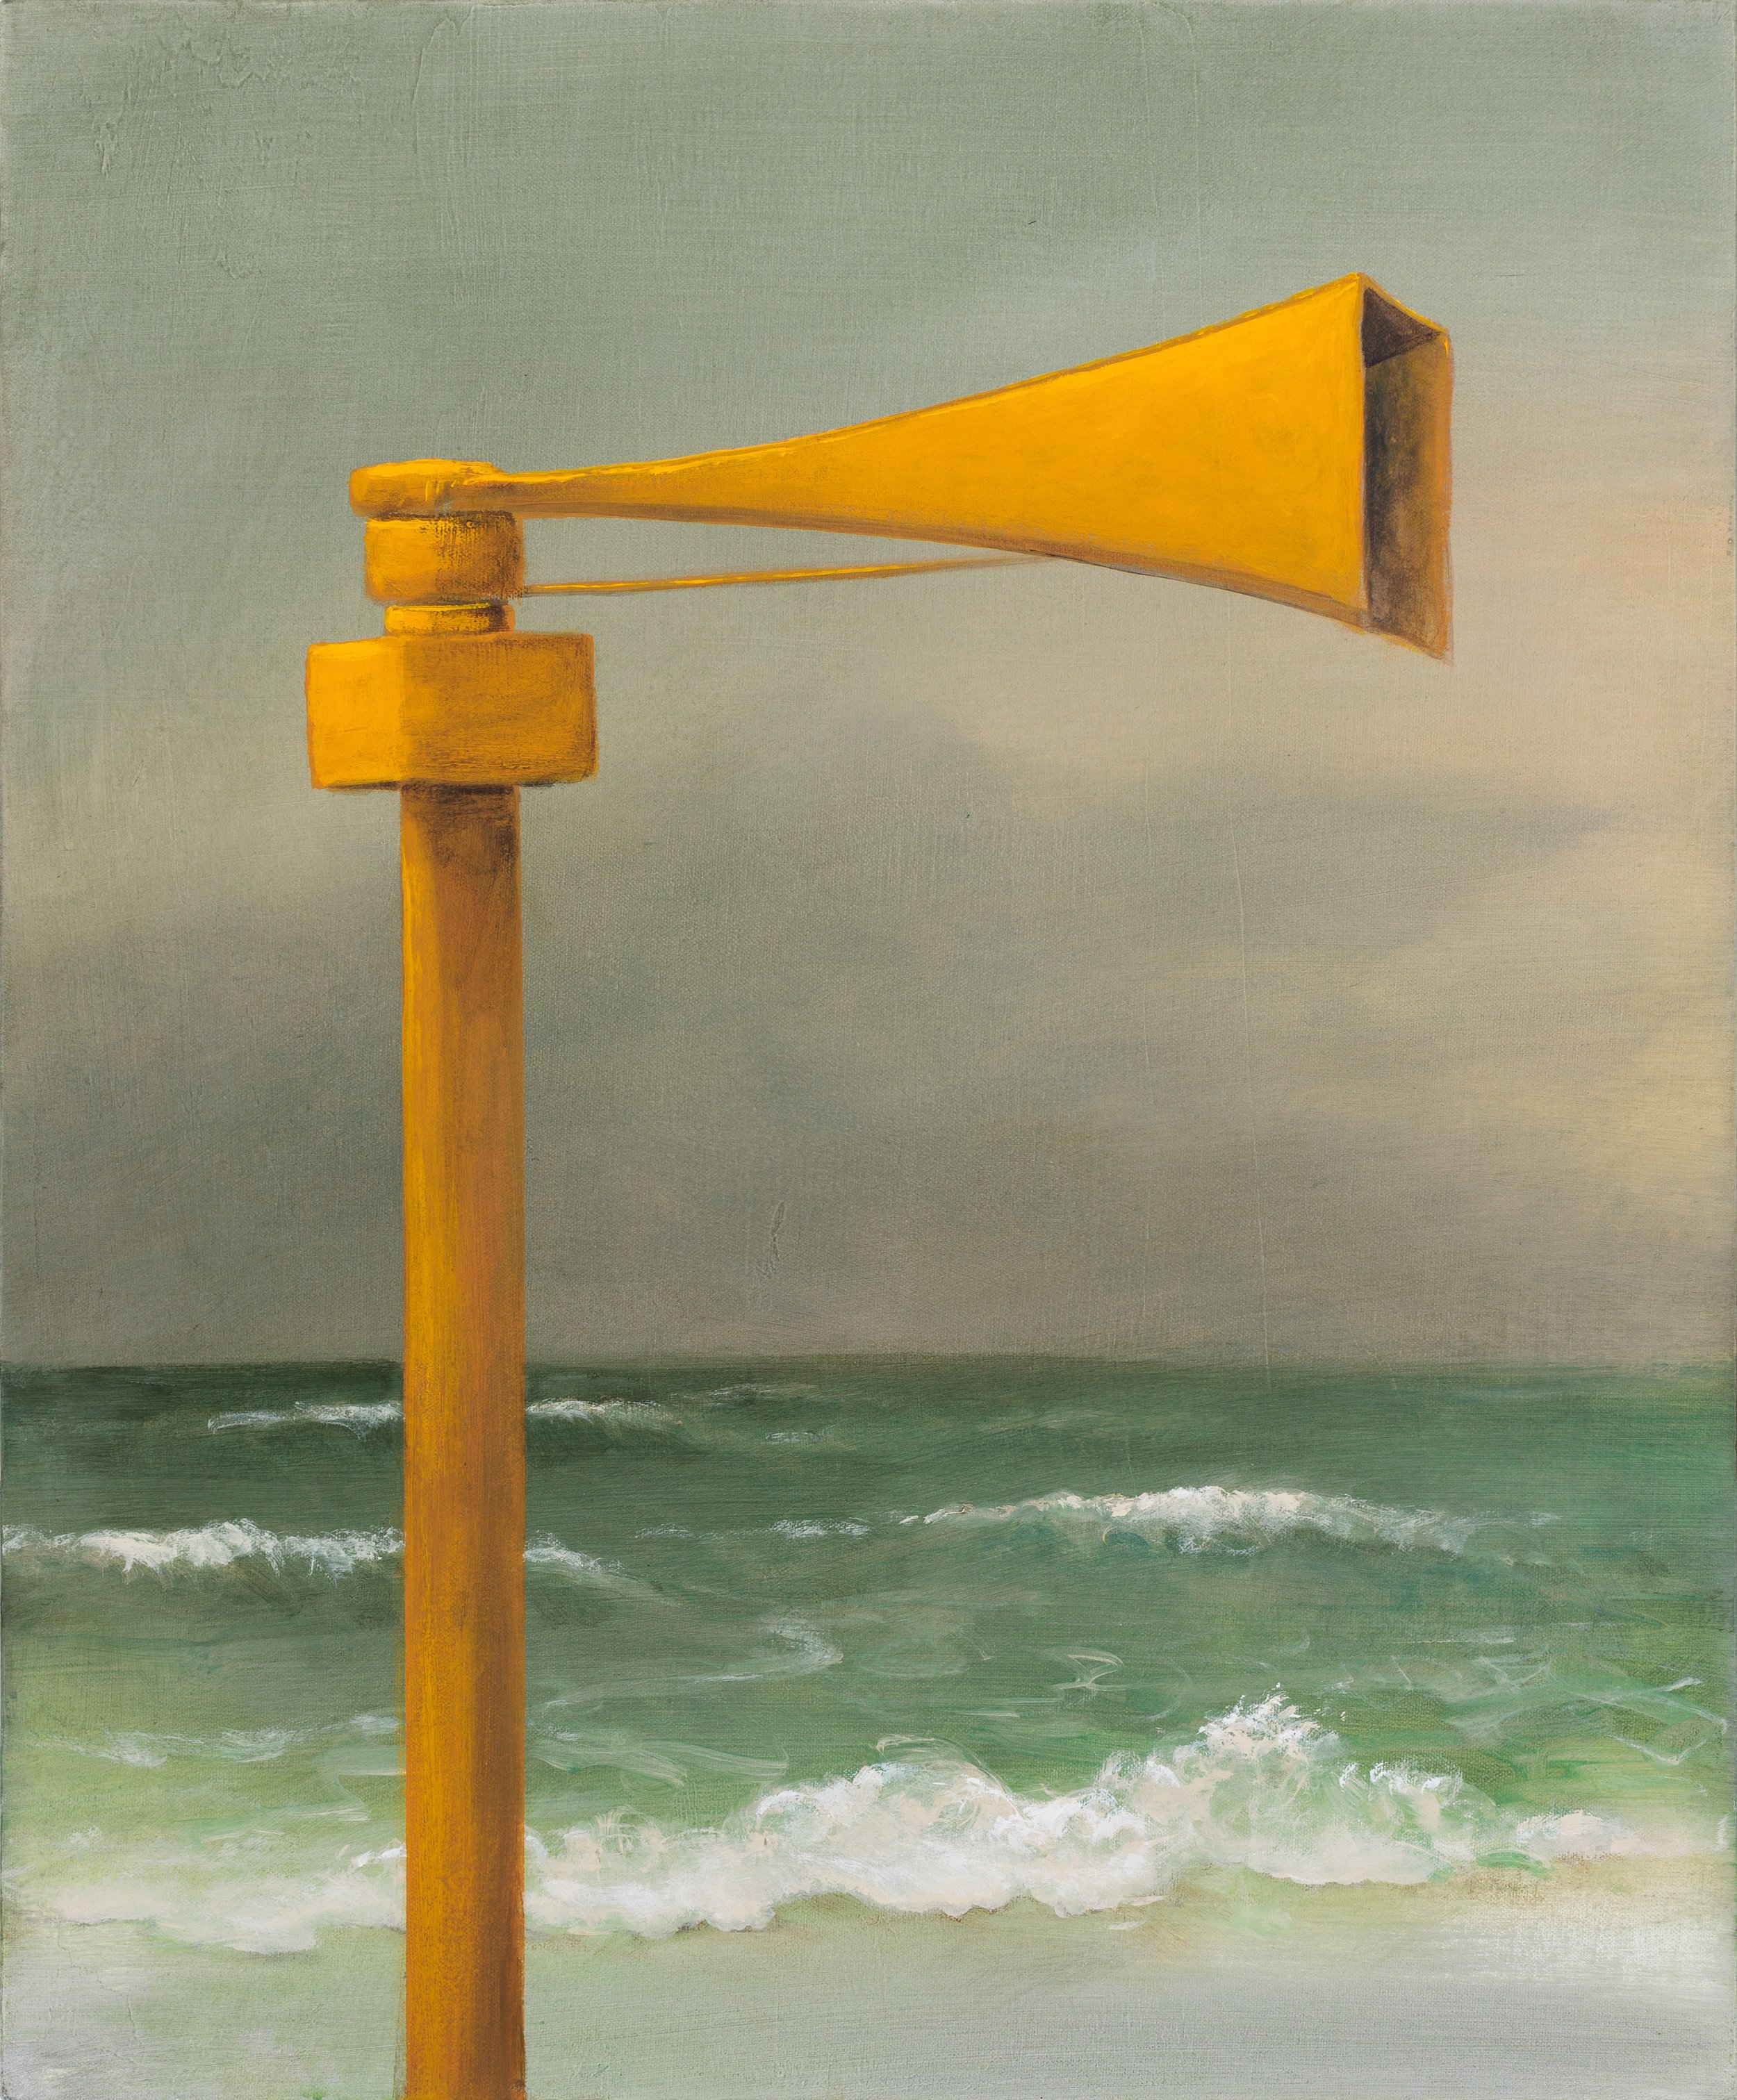 Siren: The Flood, 24'x20", acrylic on canvas